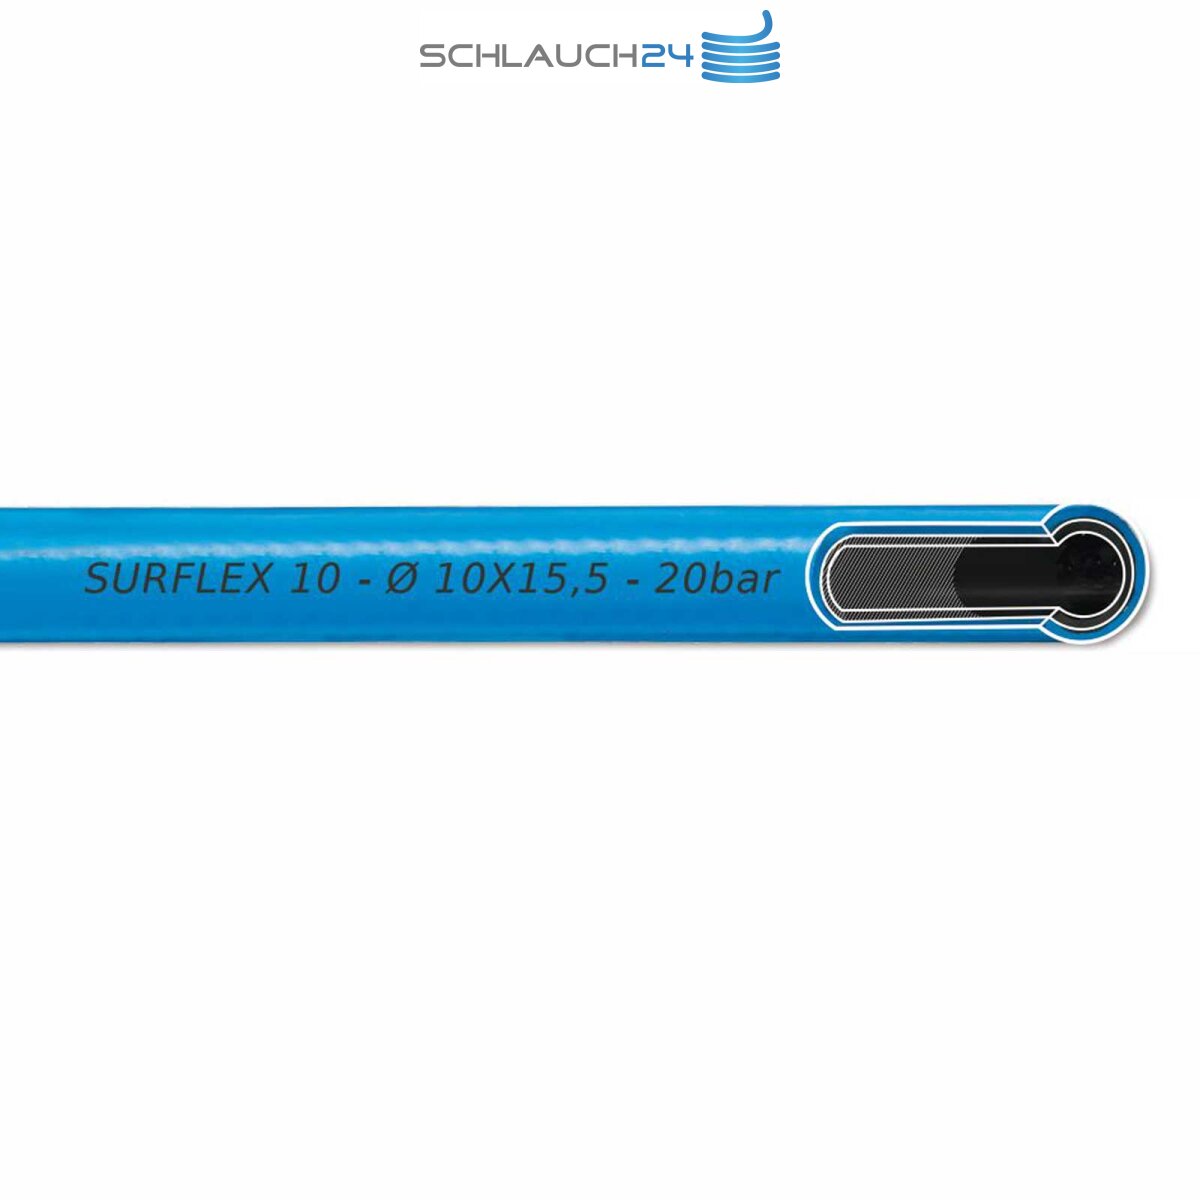 S1 Sicherheits Kupplung Auswahl: AUPROTEC Sicherheits Druckluftschlauch Set Prevost PVC-Schlauch Surflex Pro 1m Meter, Innen Ø 10mm 